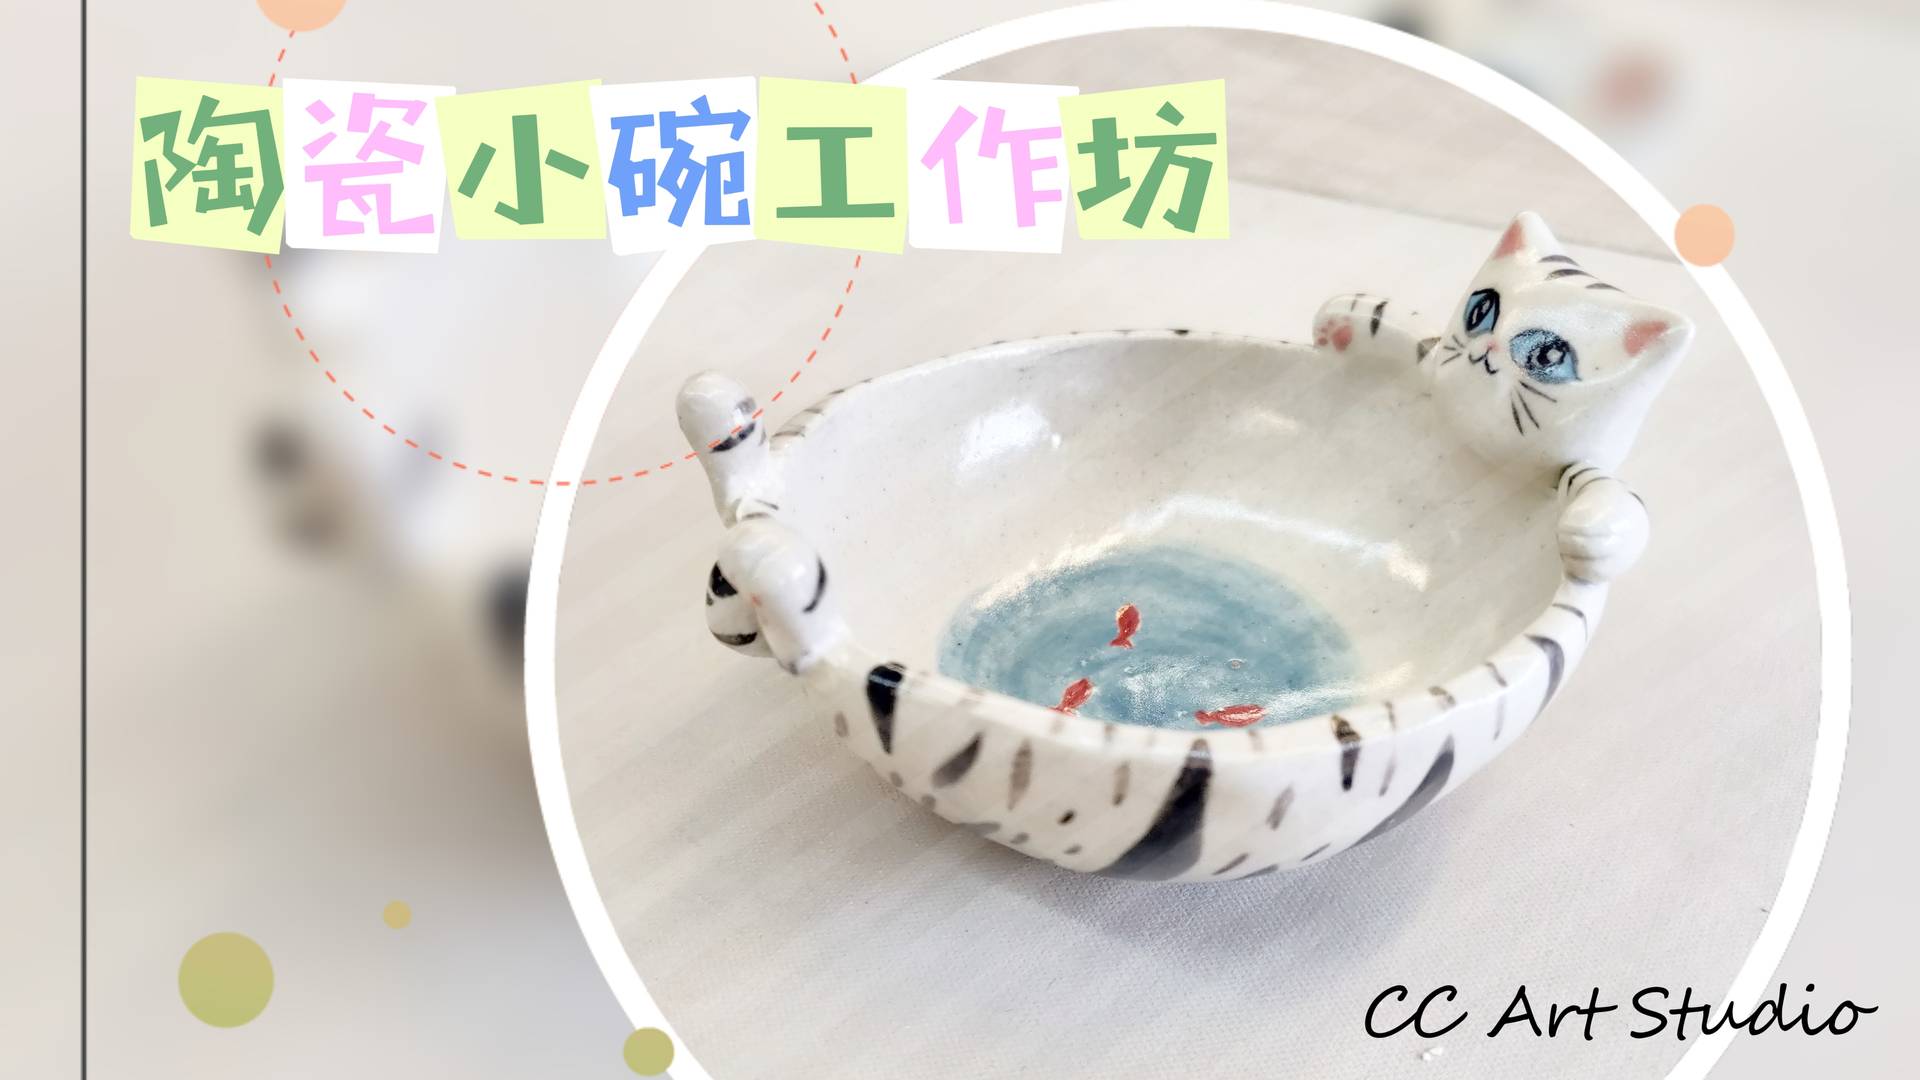 陶瓷小碗工作坊 | CC Art Studio